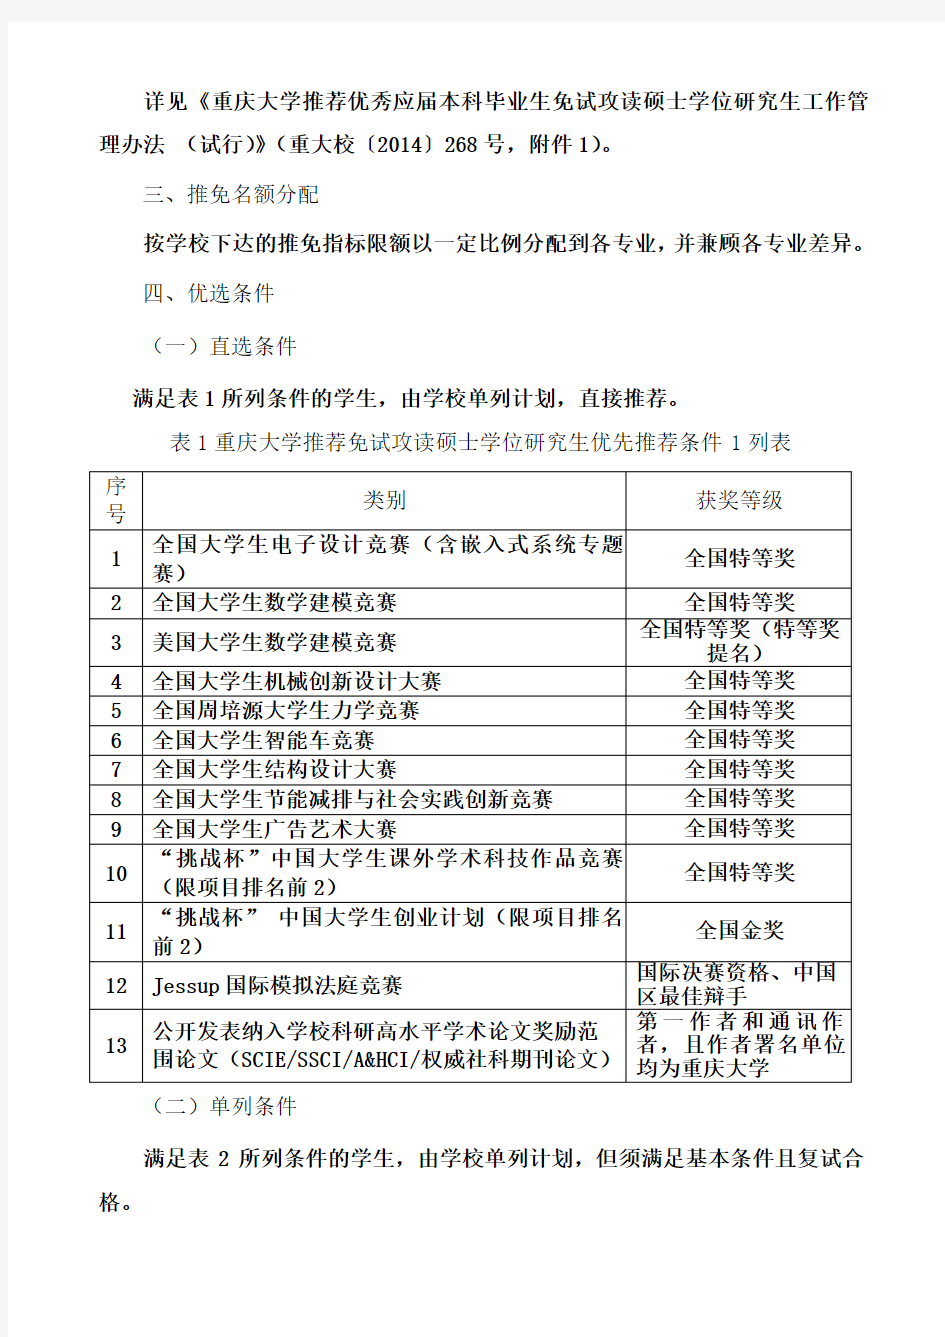 重庆大学化学化工学院2017年推免生实施办法及操作细则